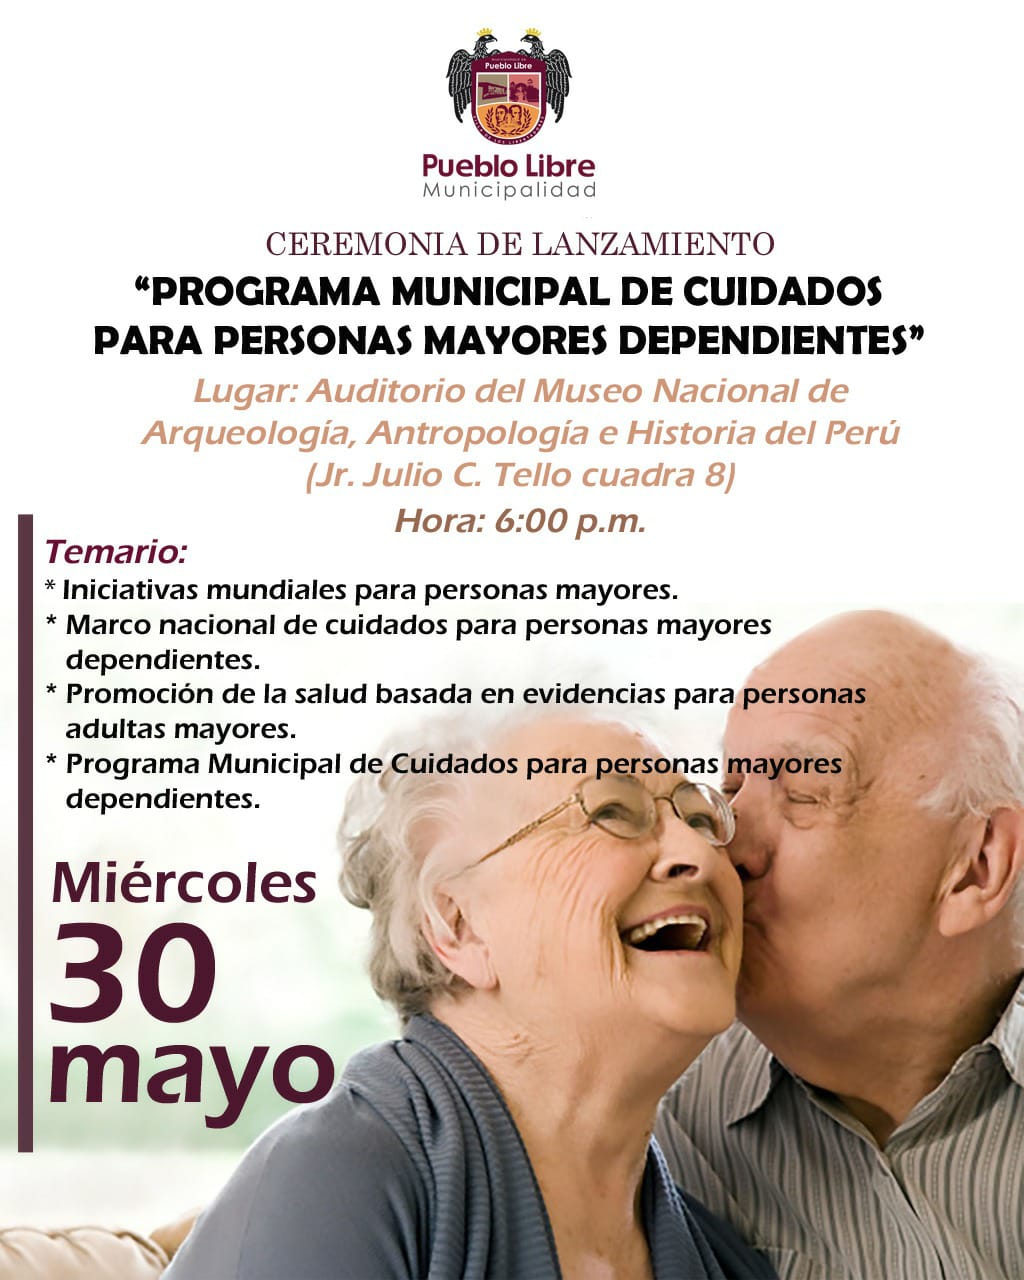 «Programa municipal de cuidados para personas mayores» se realizará hoy en la Plaza Bolívar, Pueblo Libre 